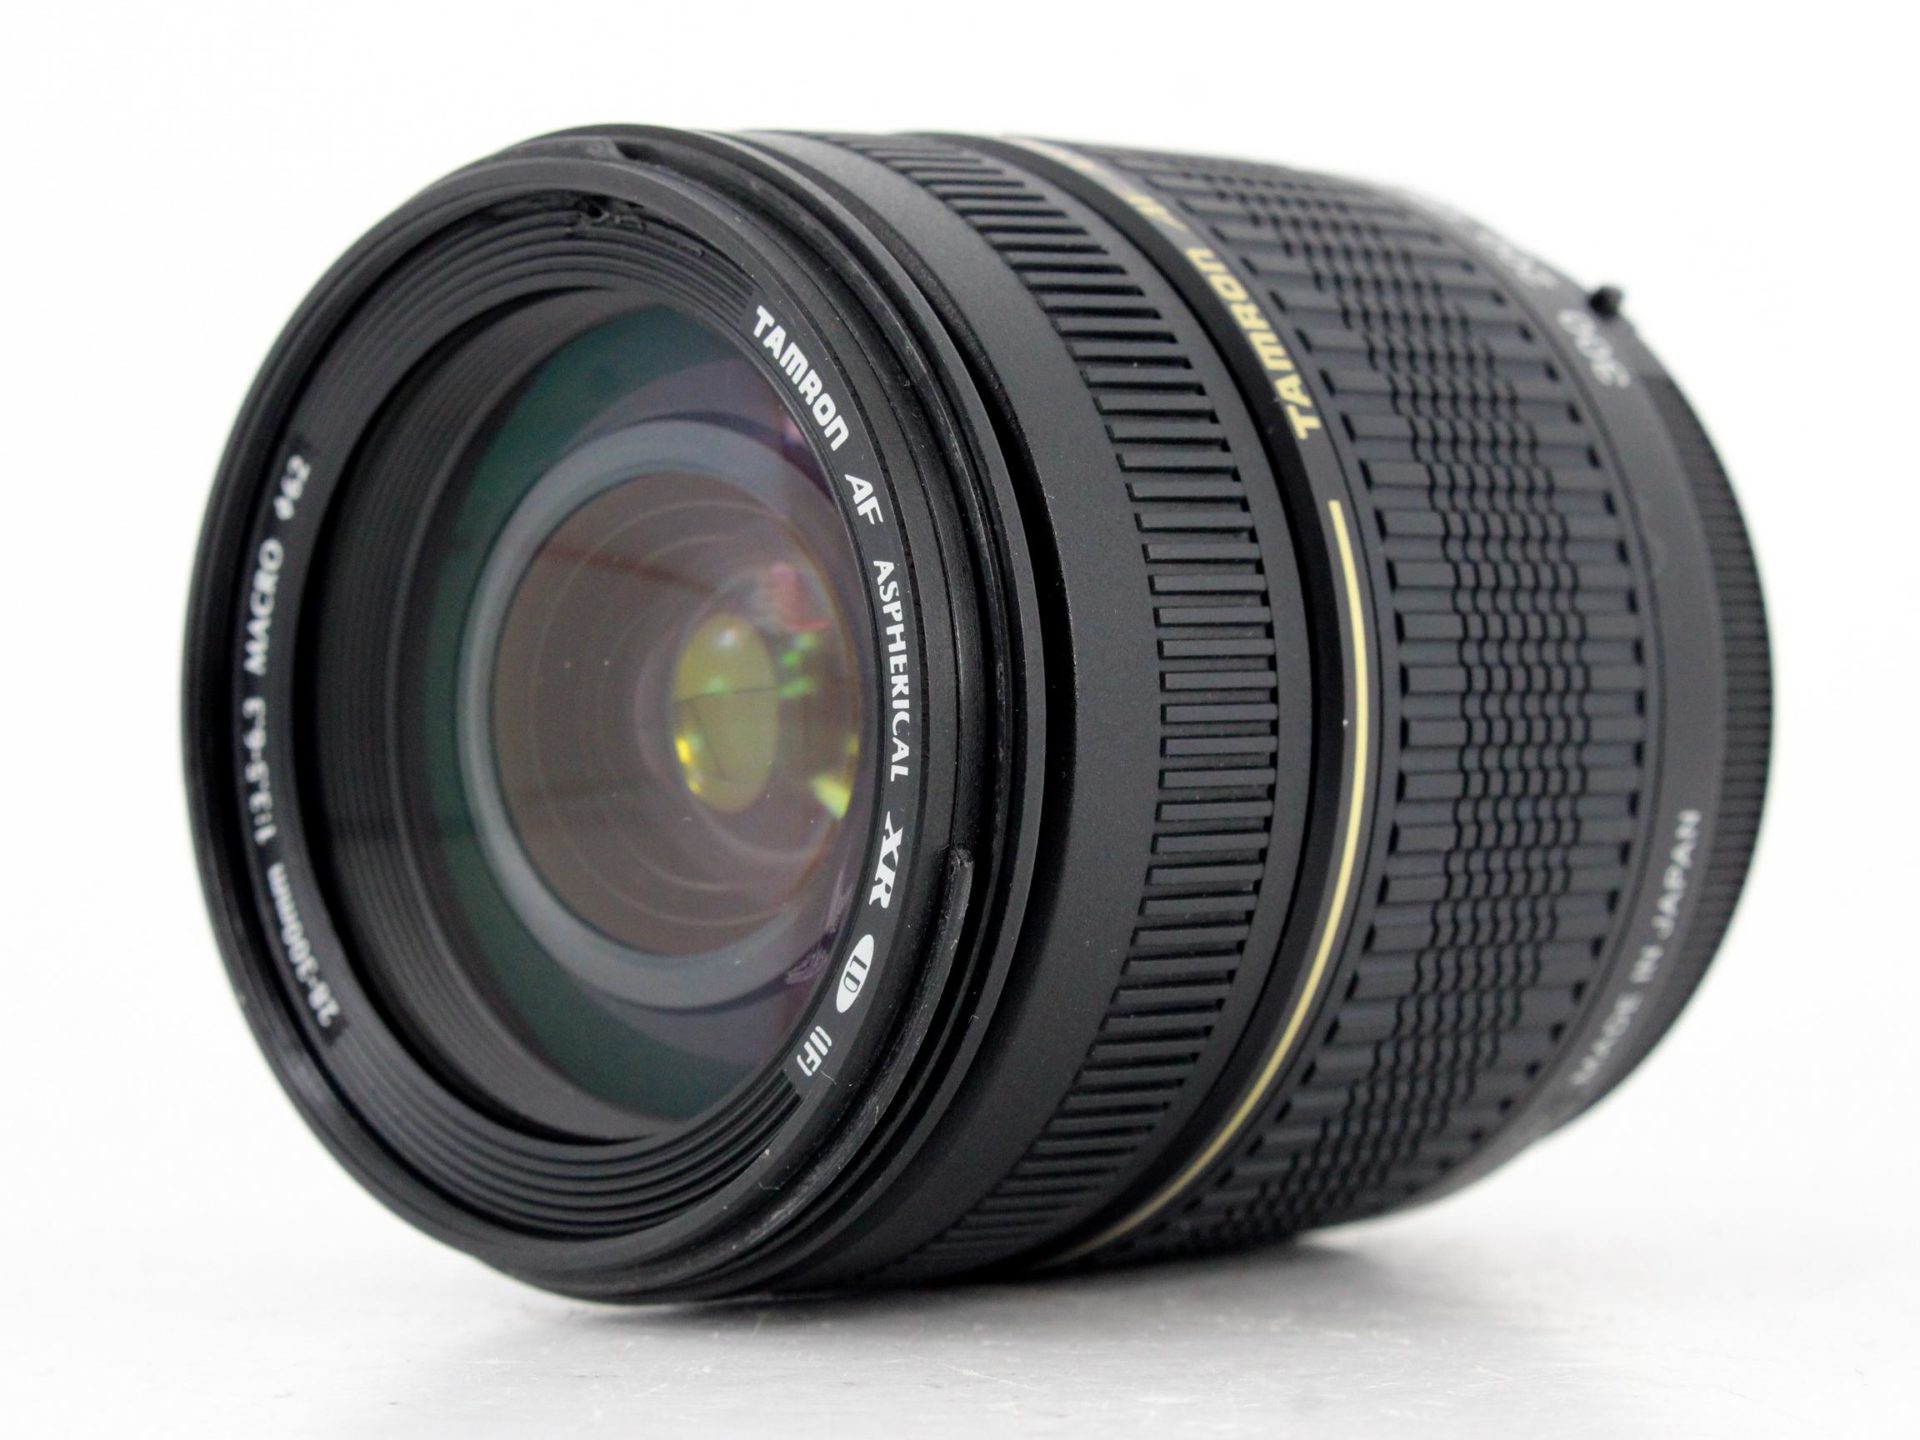 Tamron 28-300mm f/3.5-6.3 XR Di LD Aspherical IF Macro Nikon Fit Lens